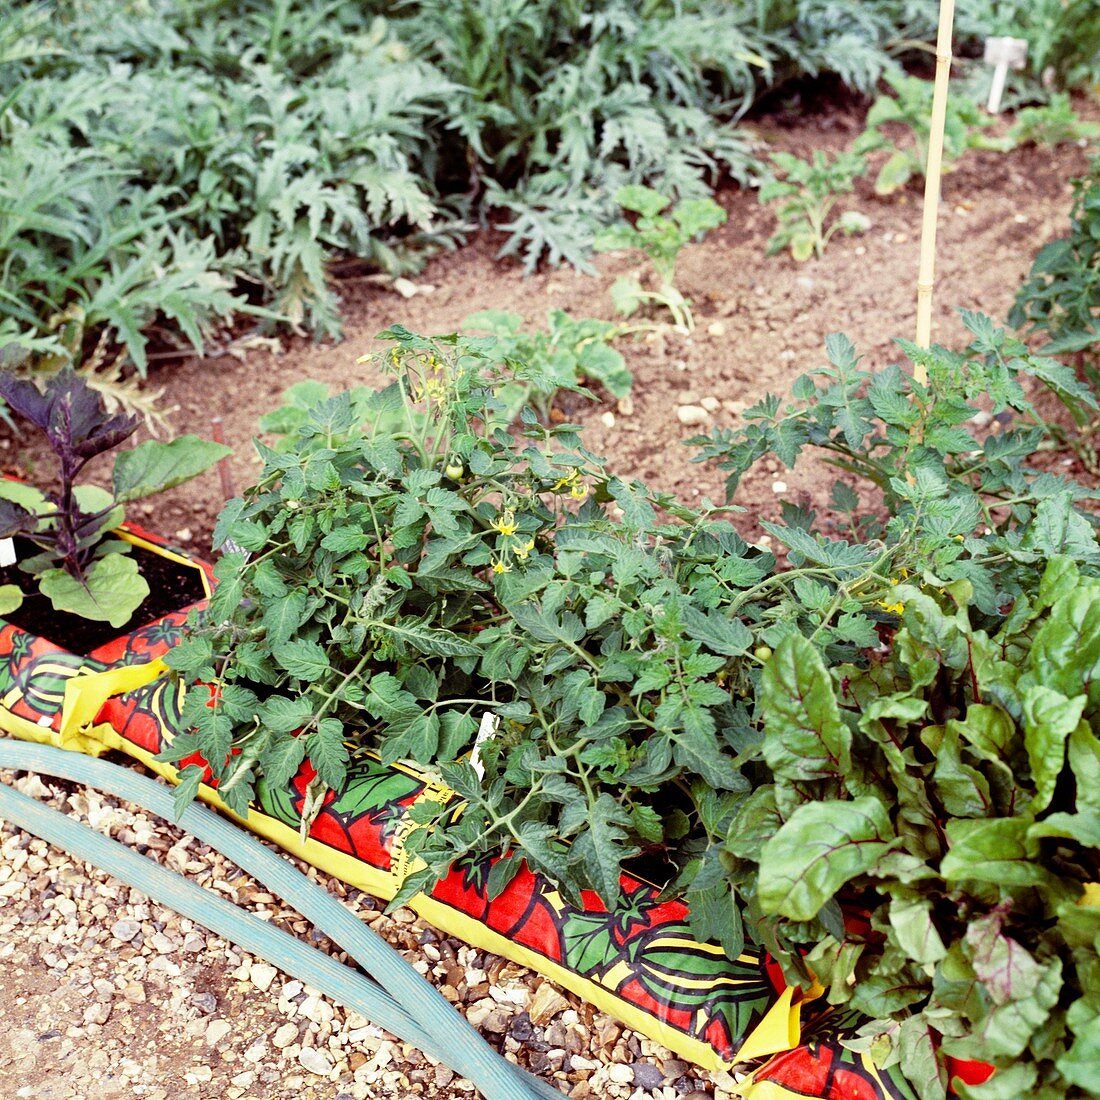 Vegetable plants growing in growbags